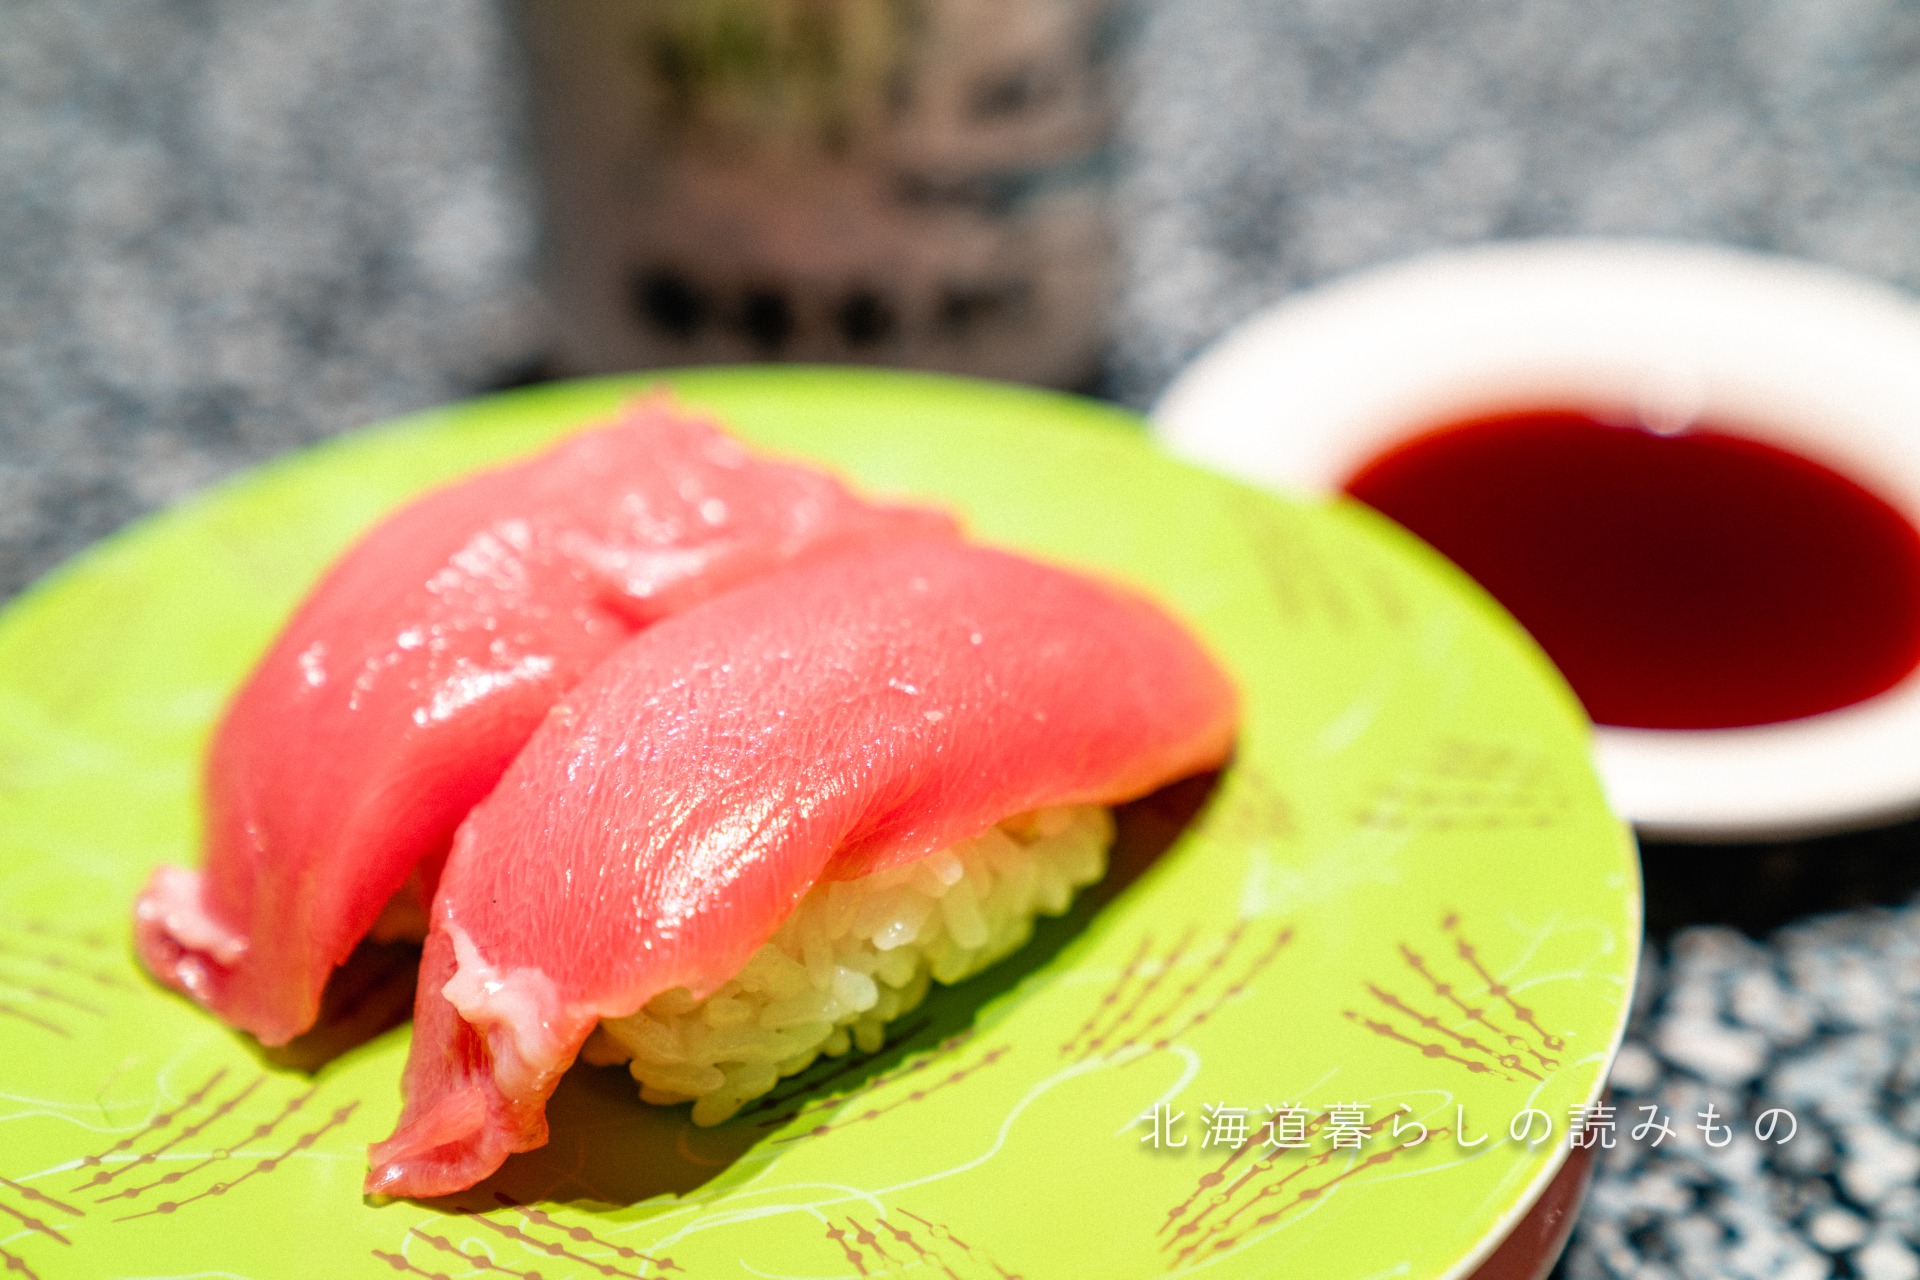 迴轉壽司根室花丸的菜單上的「大西洋藍鰭金槍魚中肥肉」